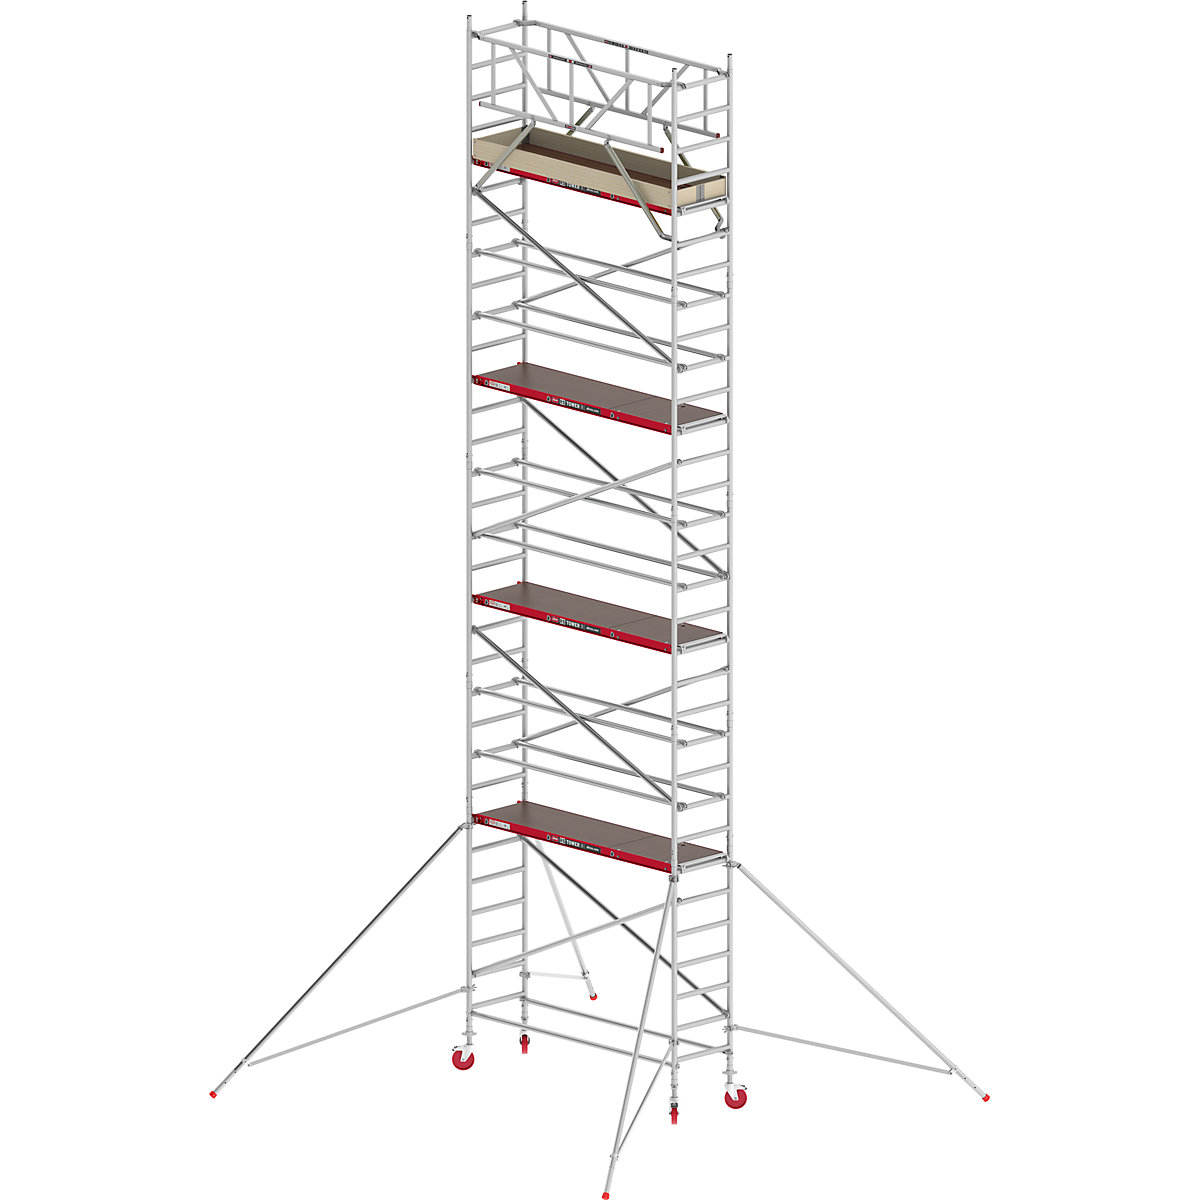 Uska pomična skela RS TOWER 41 – Altrex, drvena platforma, dužina 1,85 m, radna visina 10,20 m-2